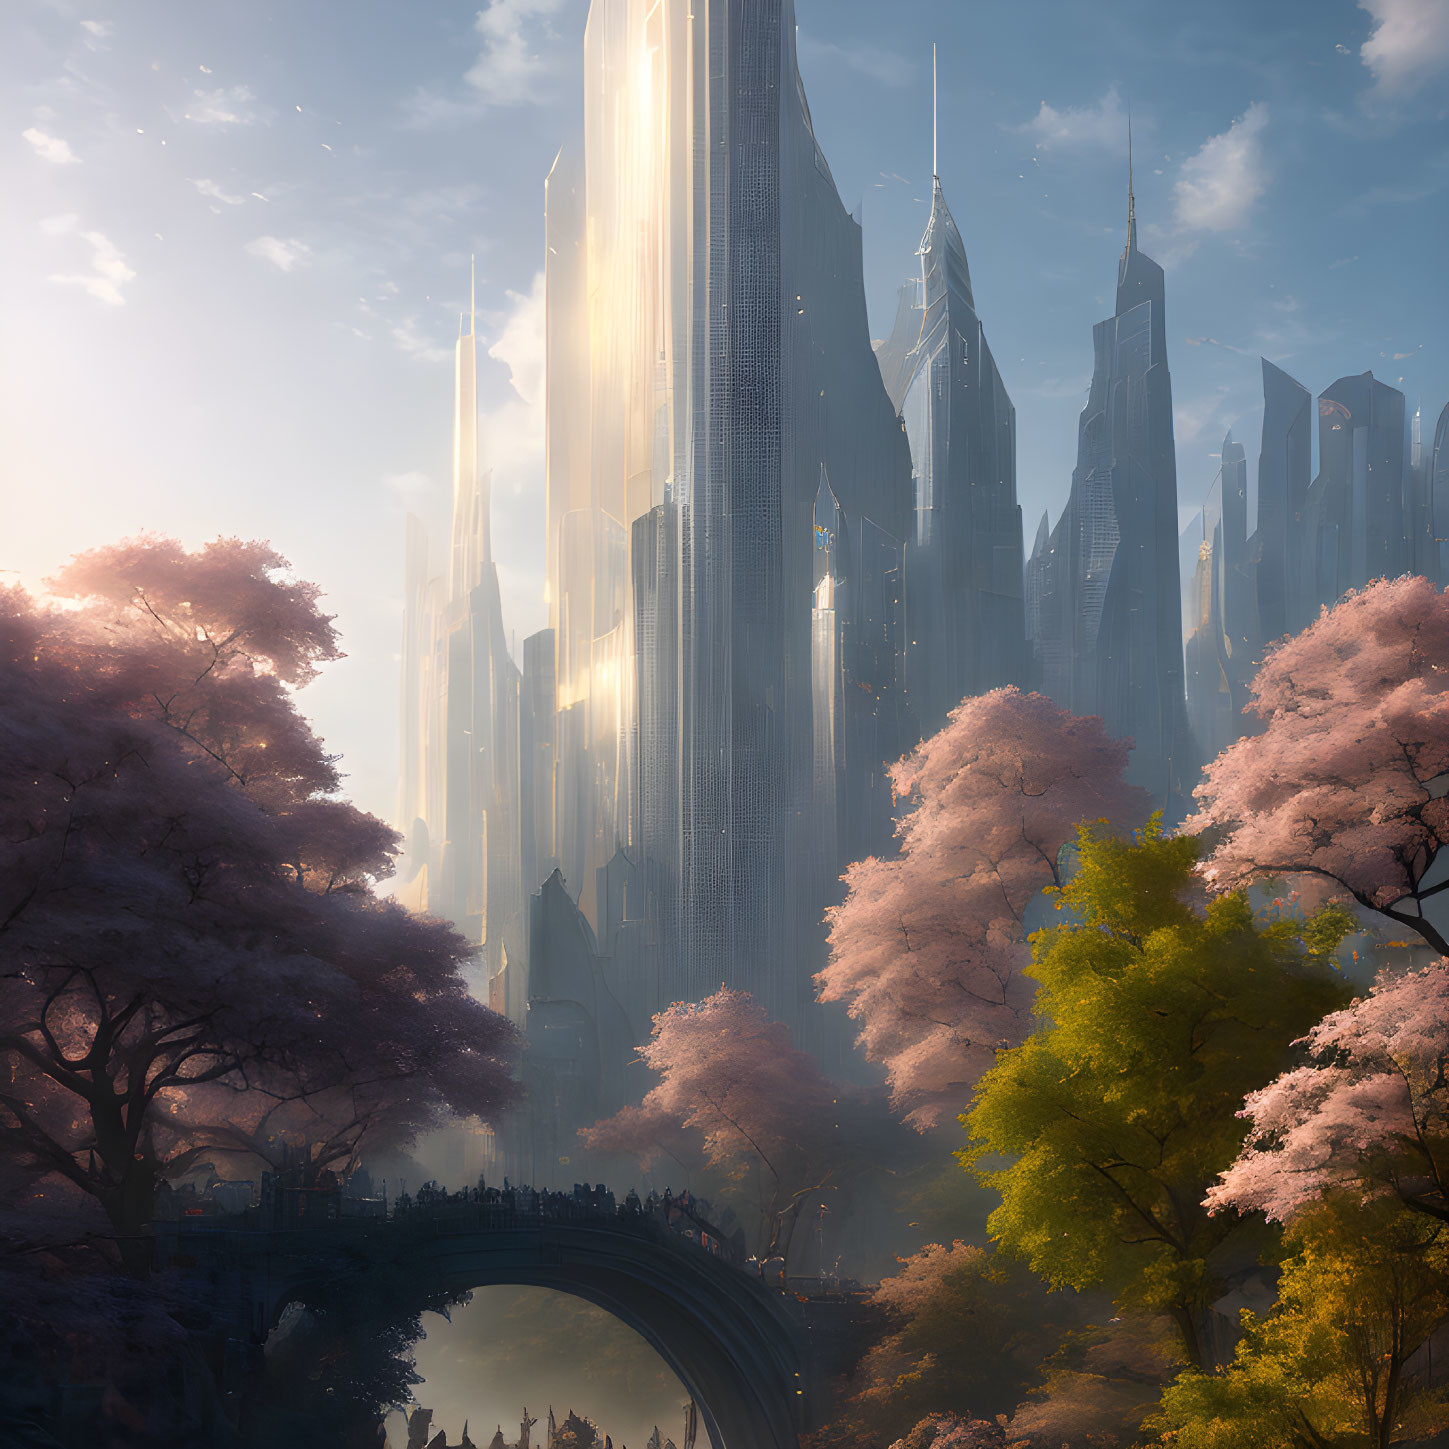 Futuristic cityscape with skyscrapers, bridge, river, and cherry blossom trees